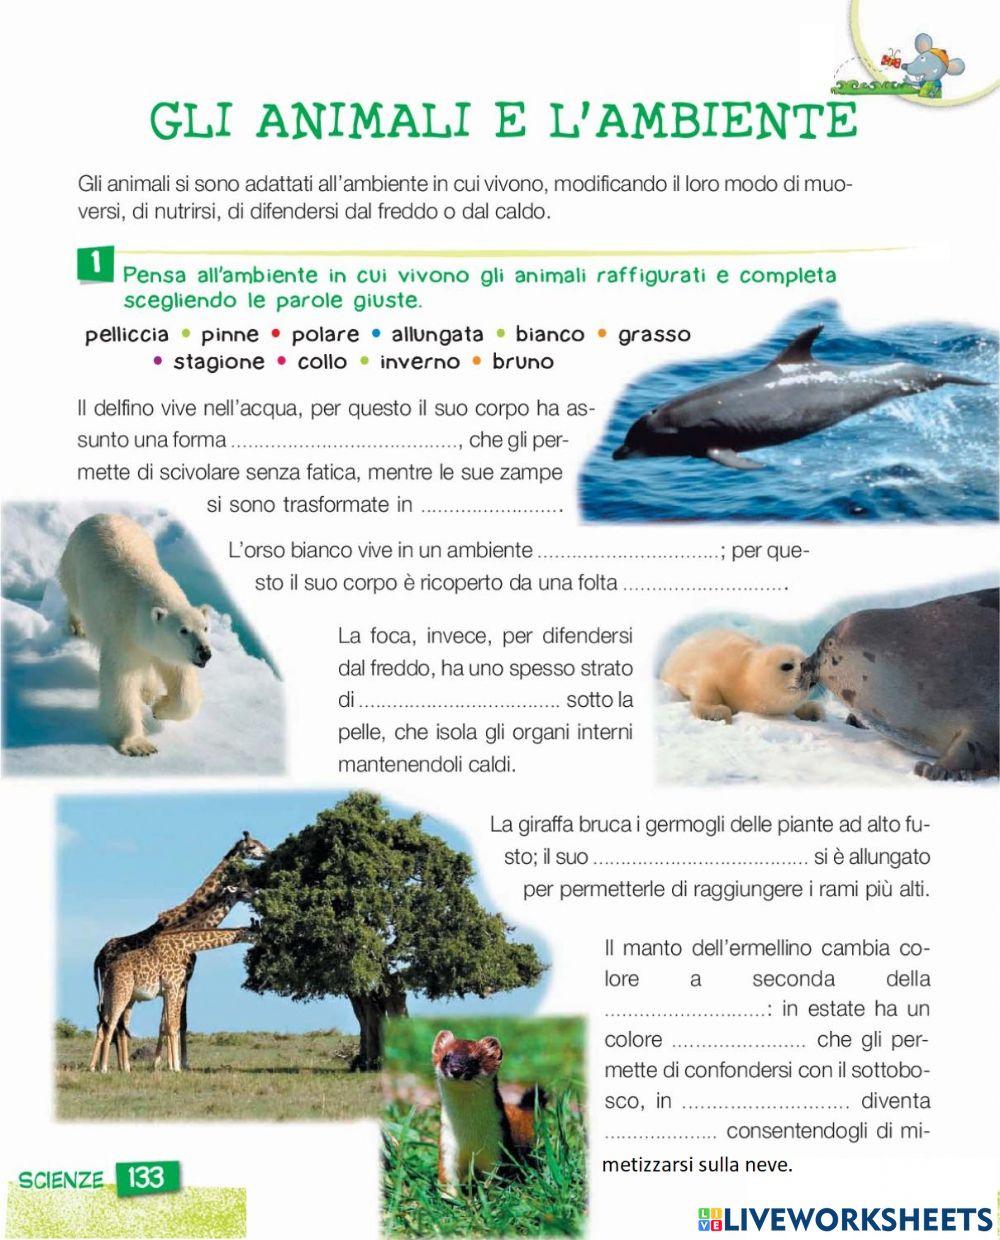 Gli animali e l'ambiente